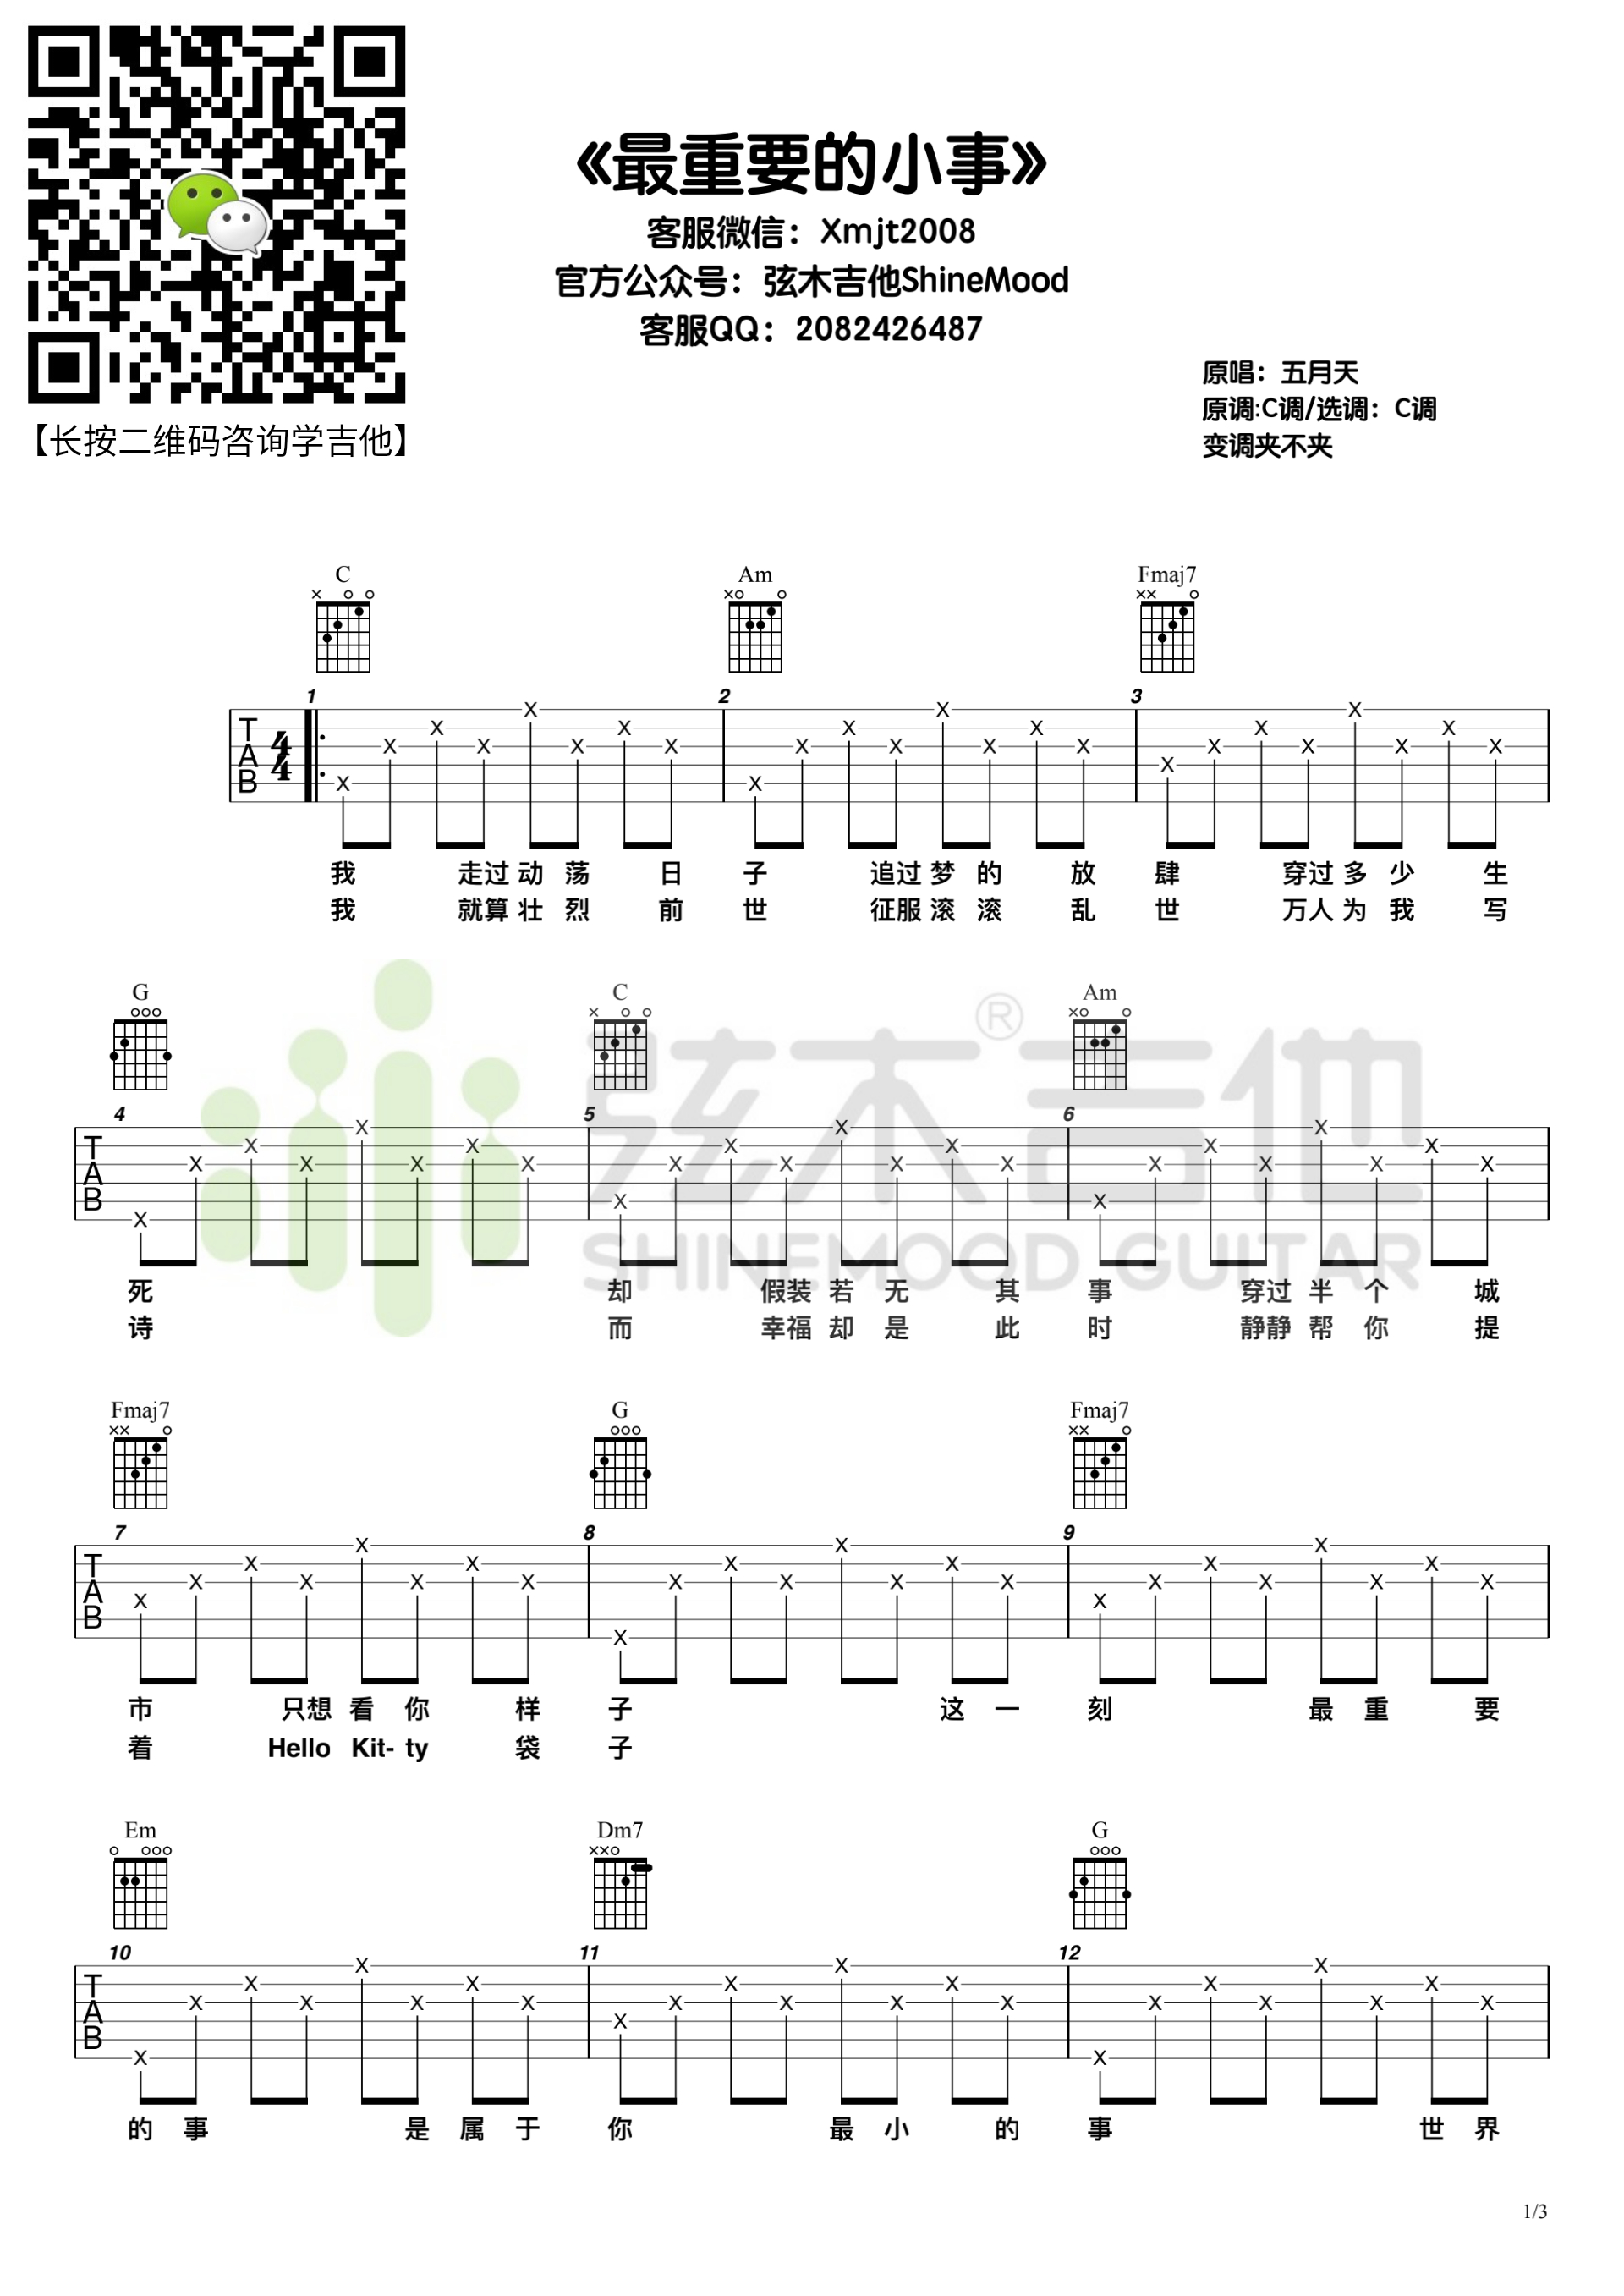 ★ 最重要的小事 - Sheet Music / Piano Score Free PDF Download - HK Pop Piano ...